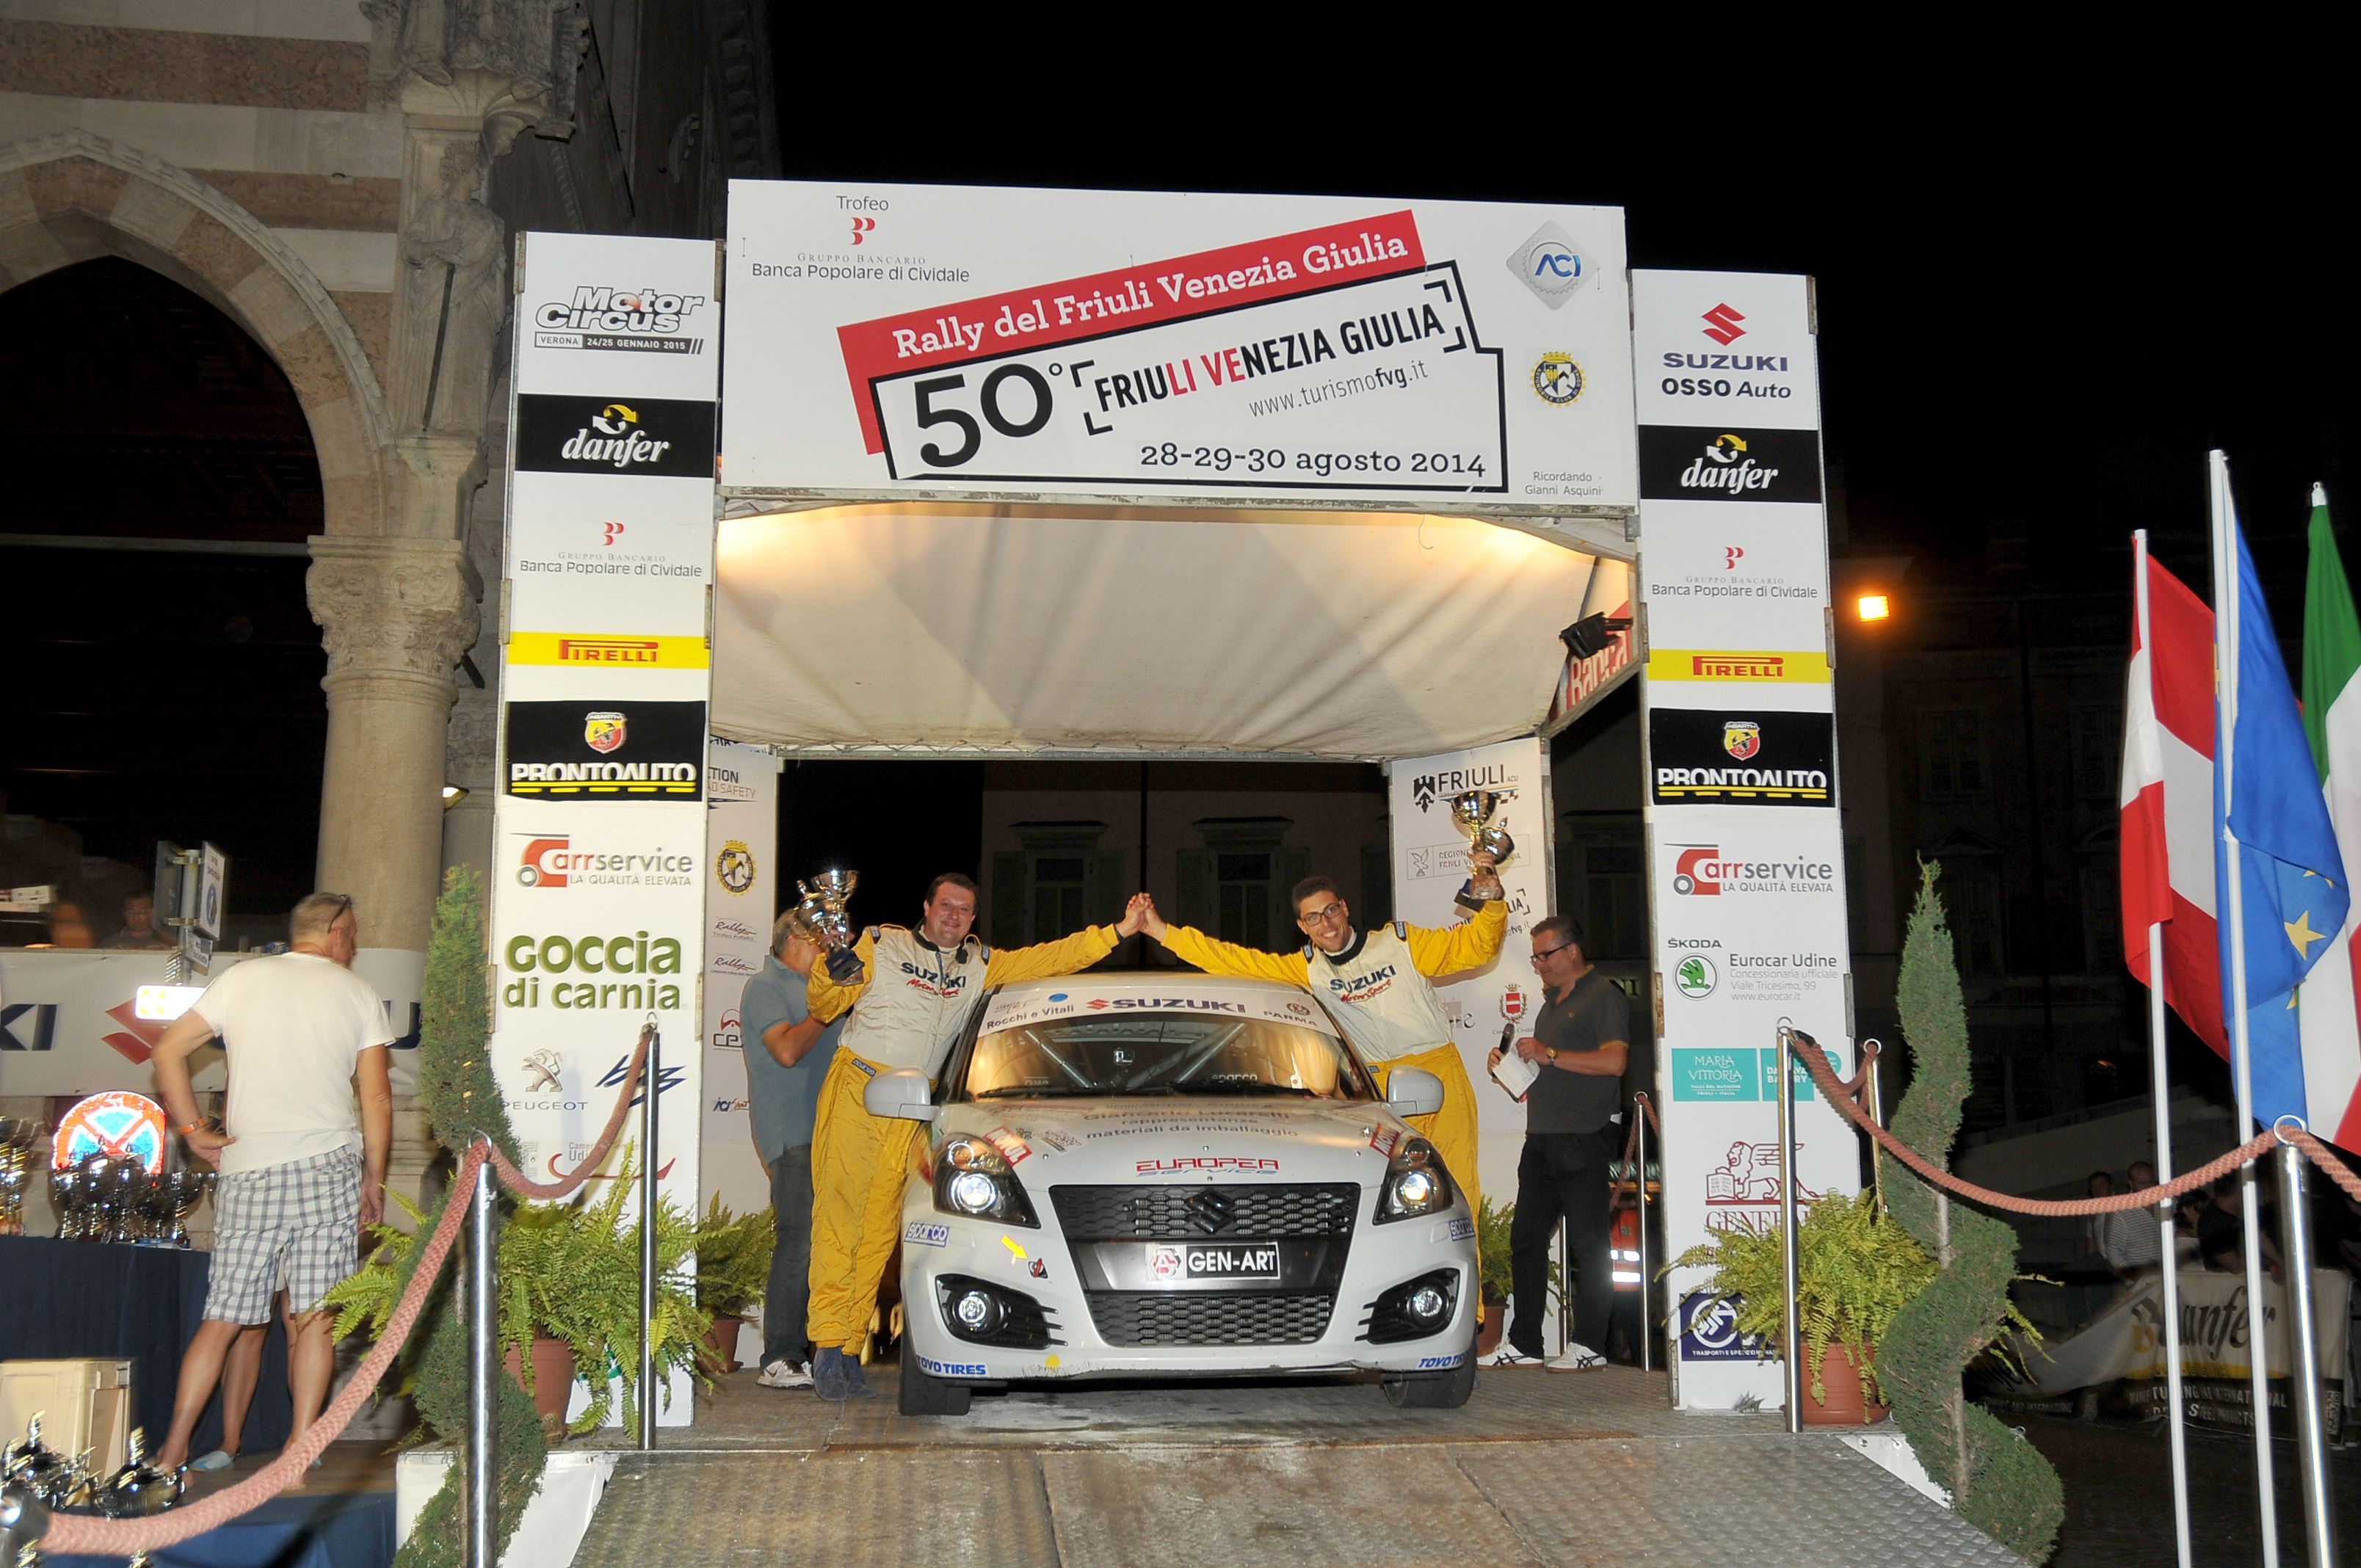  Trofeo ACI CSAI R1B, al rally del “Friuli” la seconda vittoria di Jacopo Lucarelli